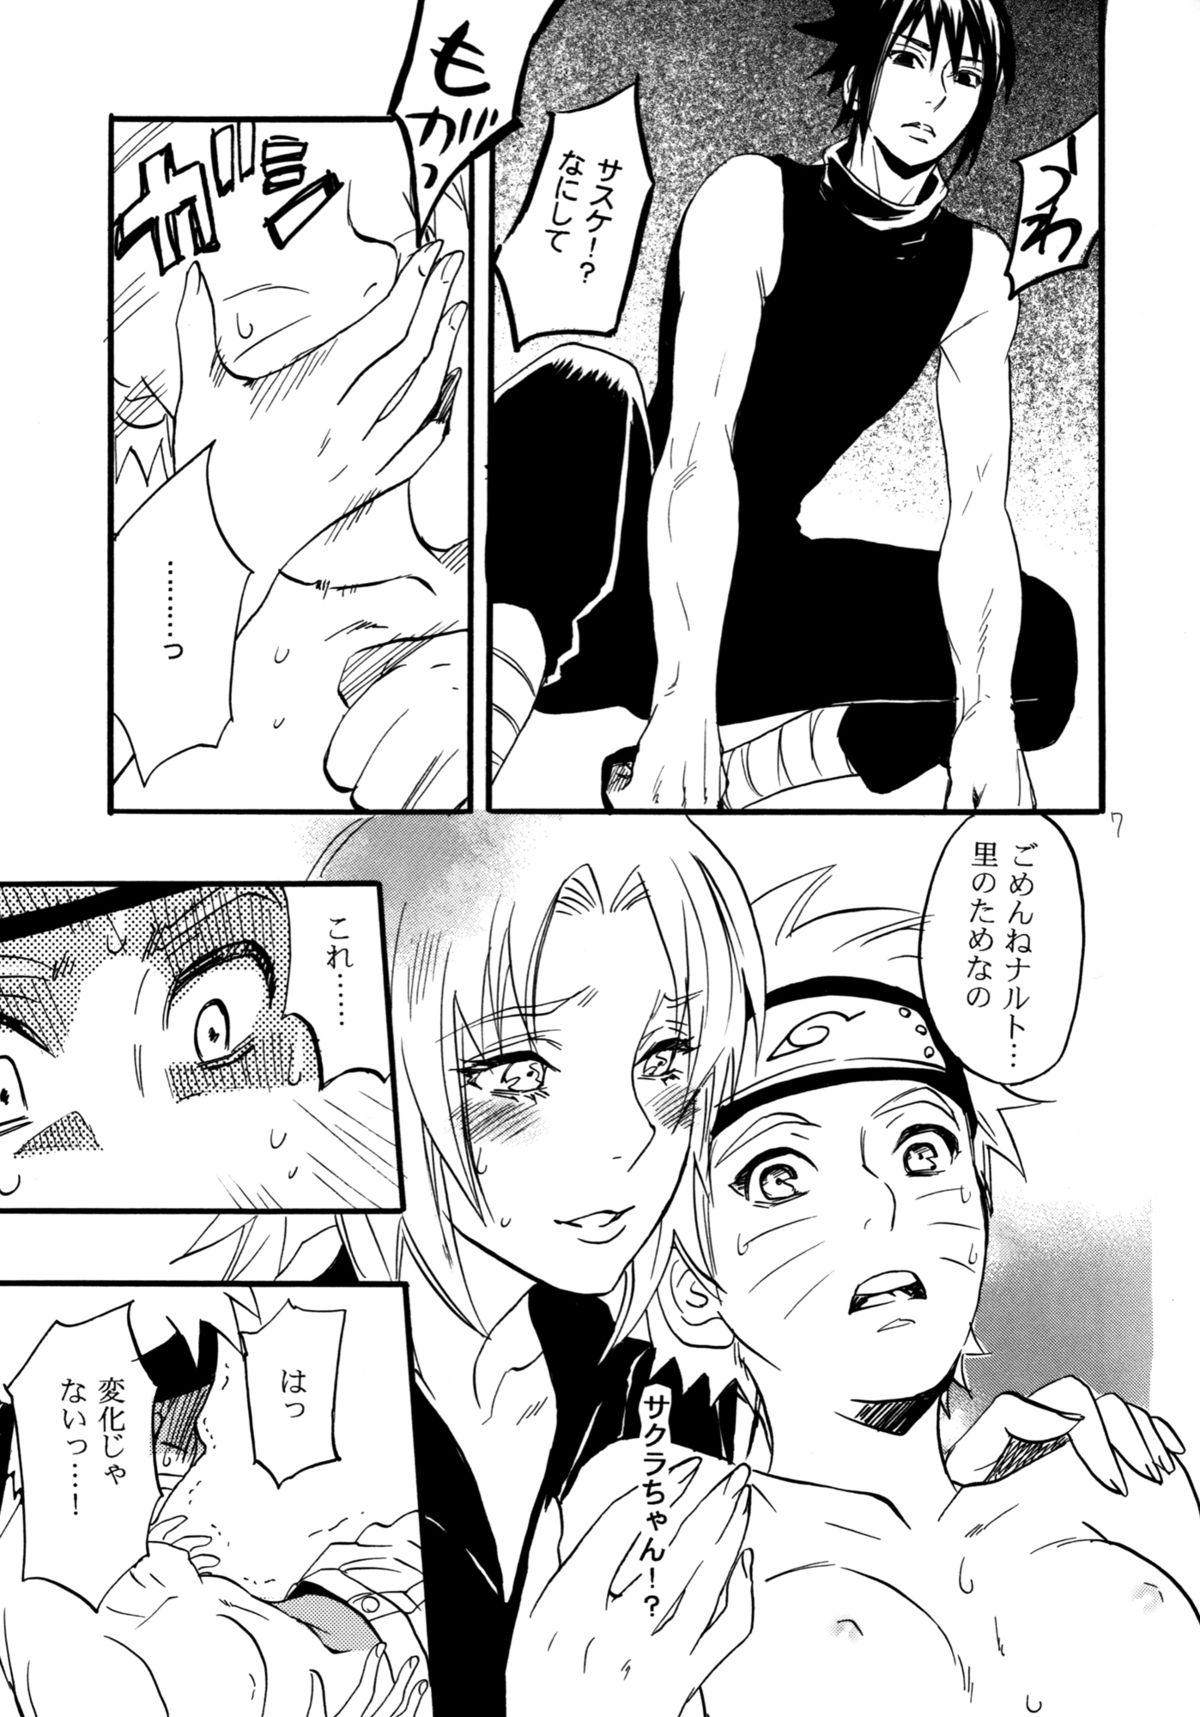 Euro Porn Three-Man Cell ga Iroiro Okashii - Naruto Ameture Porn - Page 5